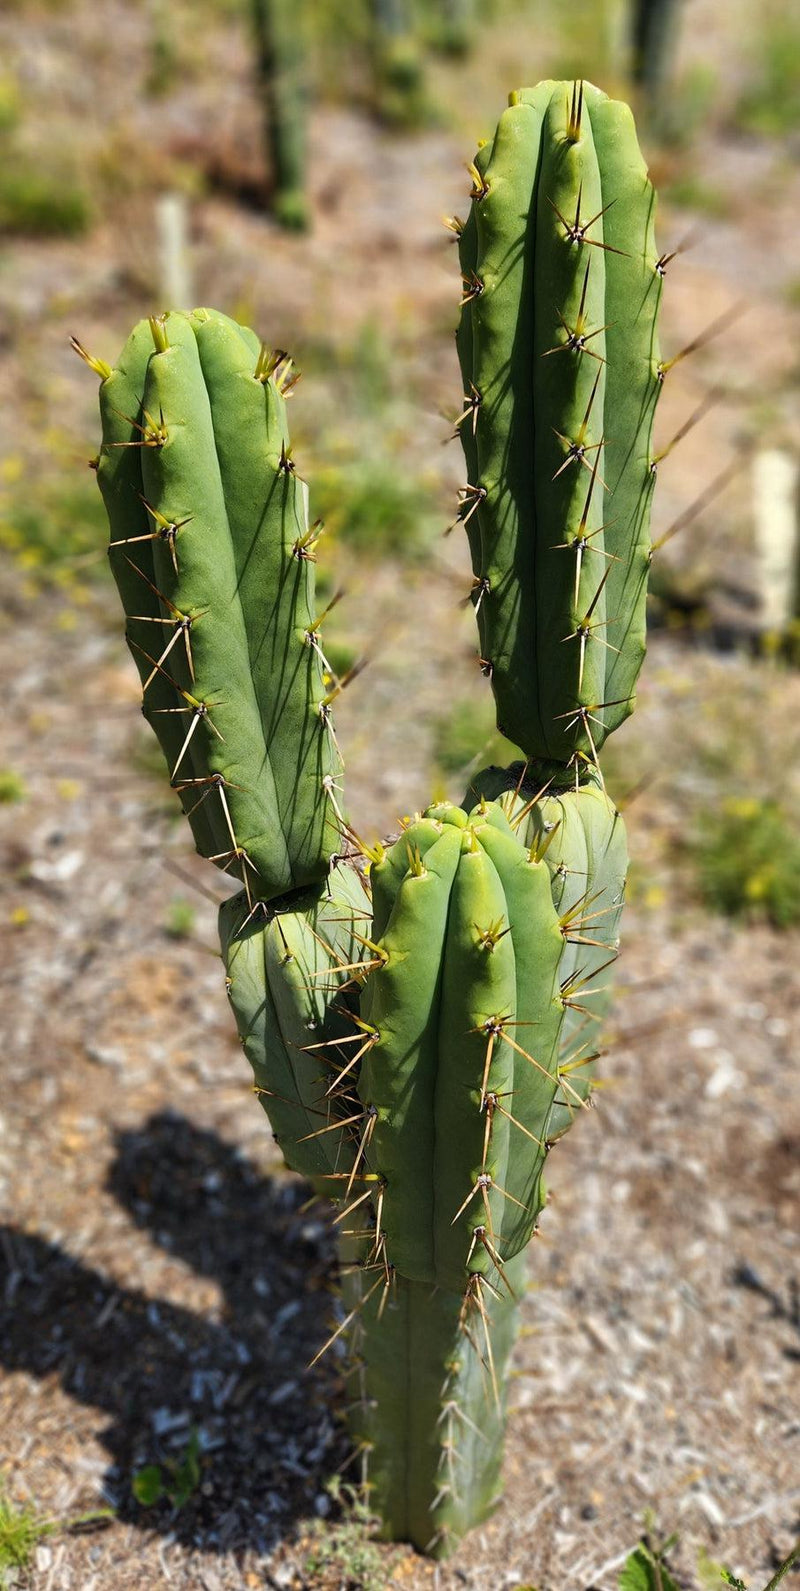 #EC19 EXACT Trichocereus Bridgesii "Eileen" Cactus Cutting 8-10"